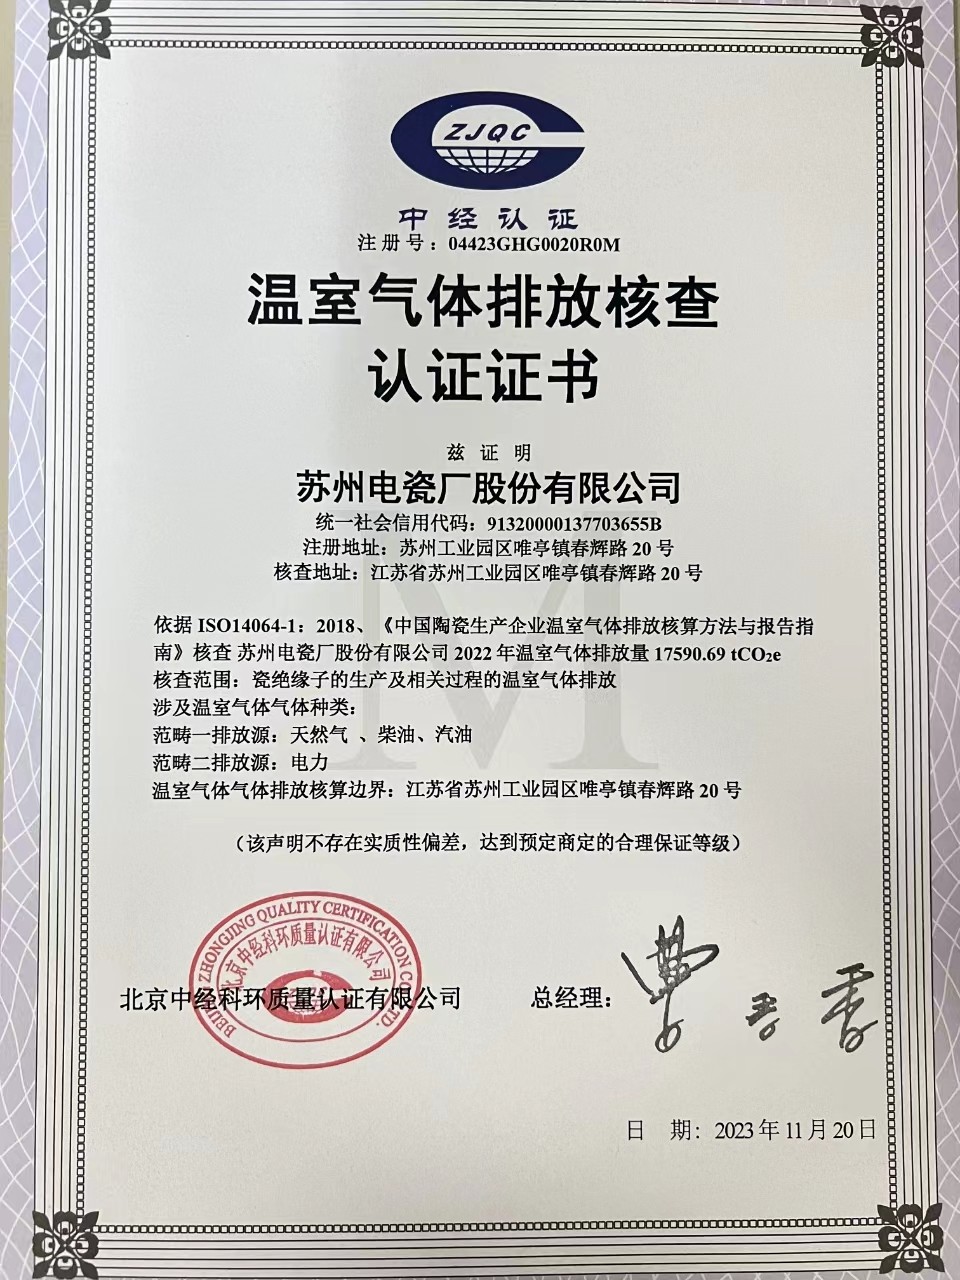 蘇州電瓷廠股份有限公司-溫室氣體排放核查認證證書.jpg